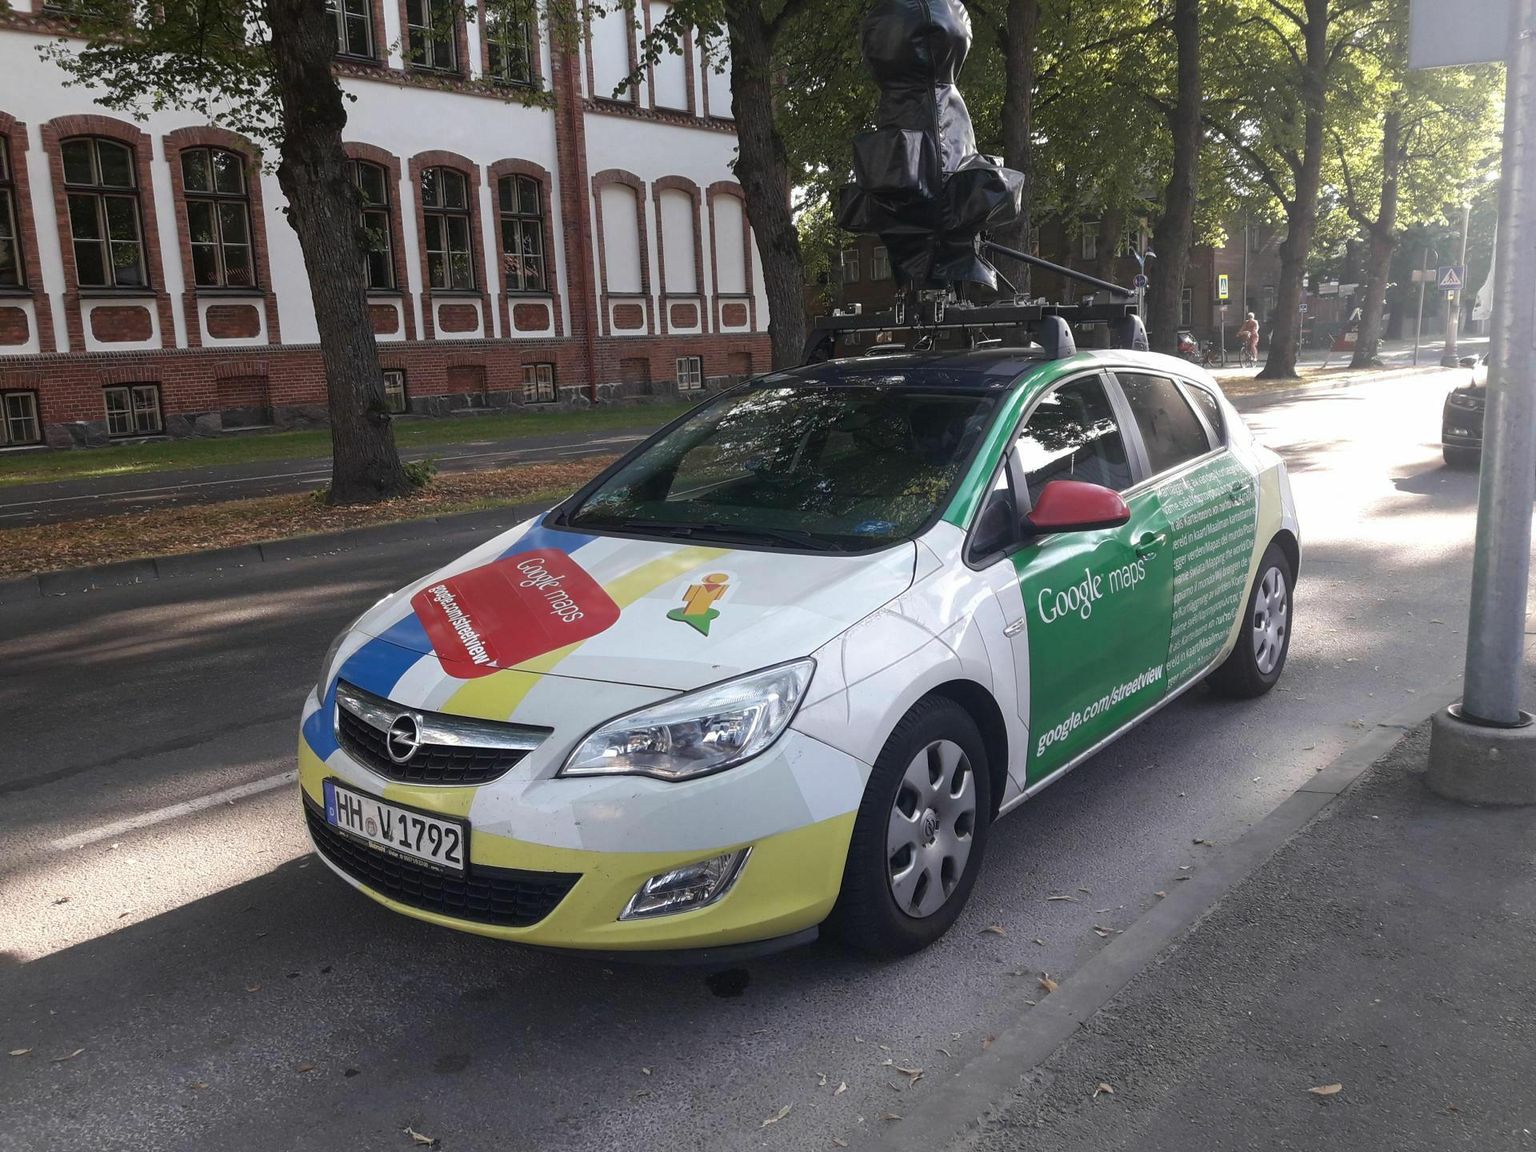 Google’i kaameratega autod tegid Pärnus ülevõtteid ka viis aastat tagasi. Arhiivifoto.